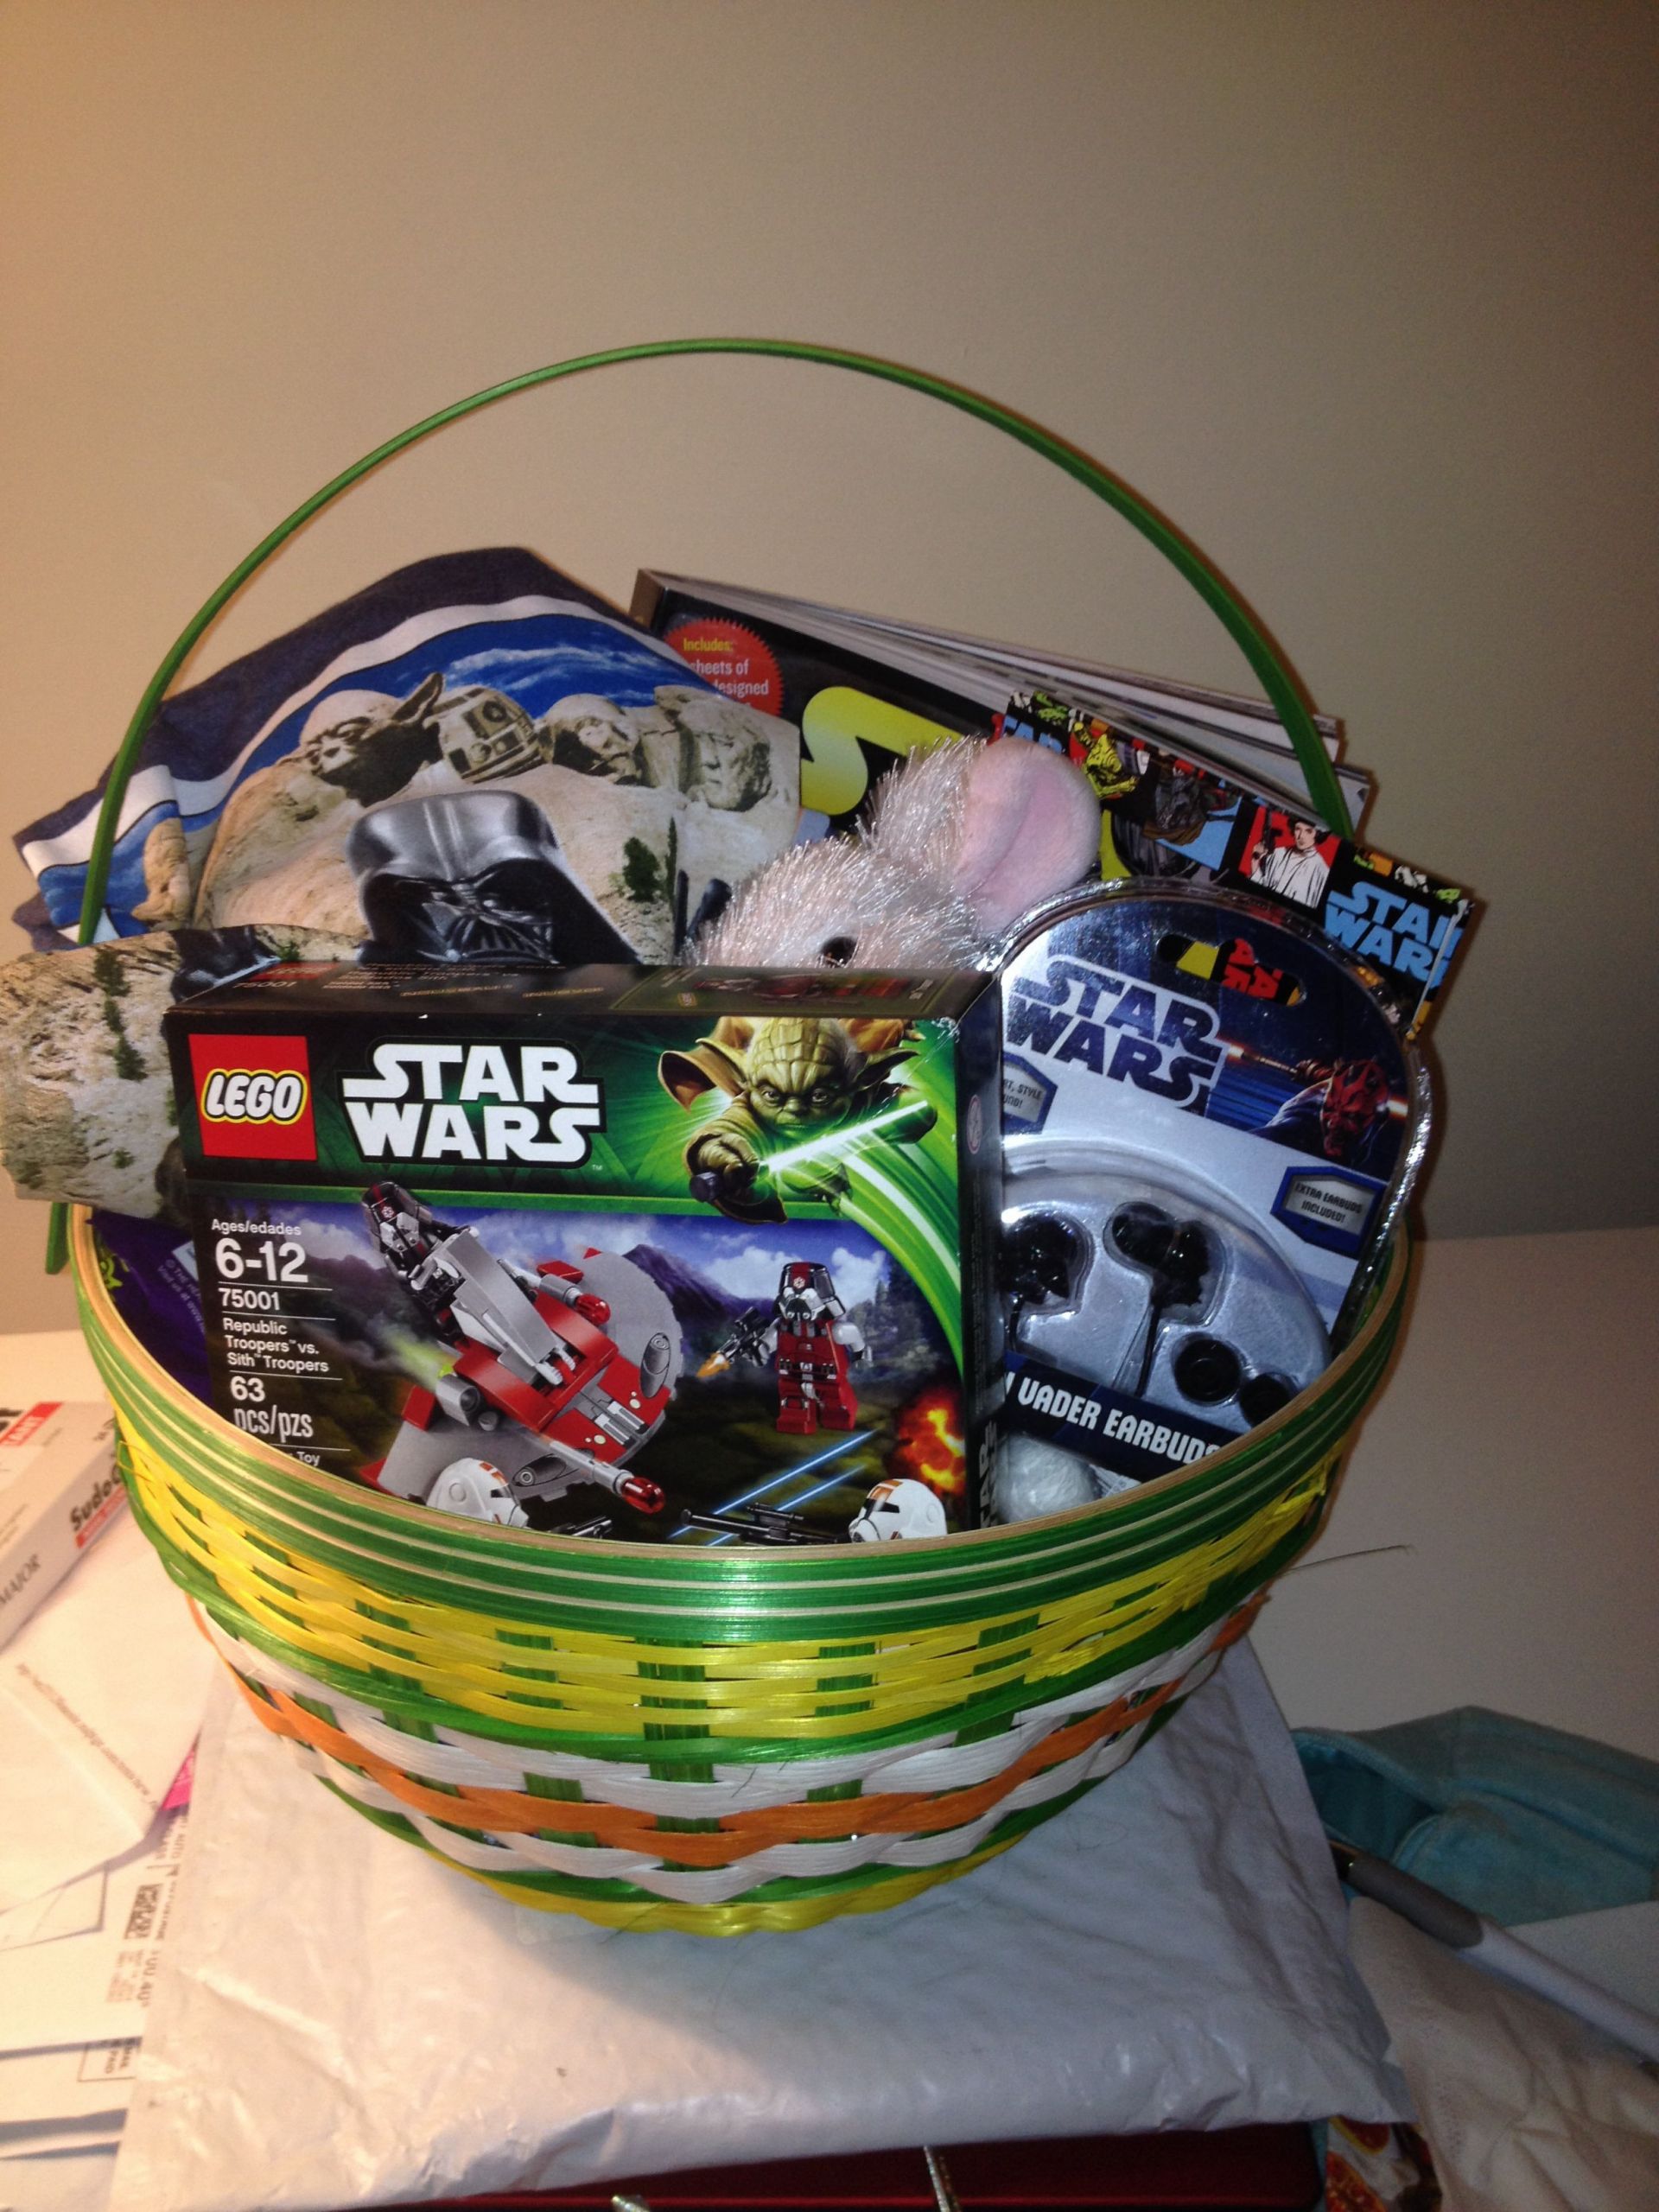 Star Wars Gift Basket Ideas
 Star Wars Easter Basket Holidays